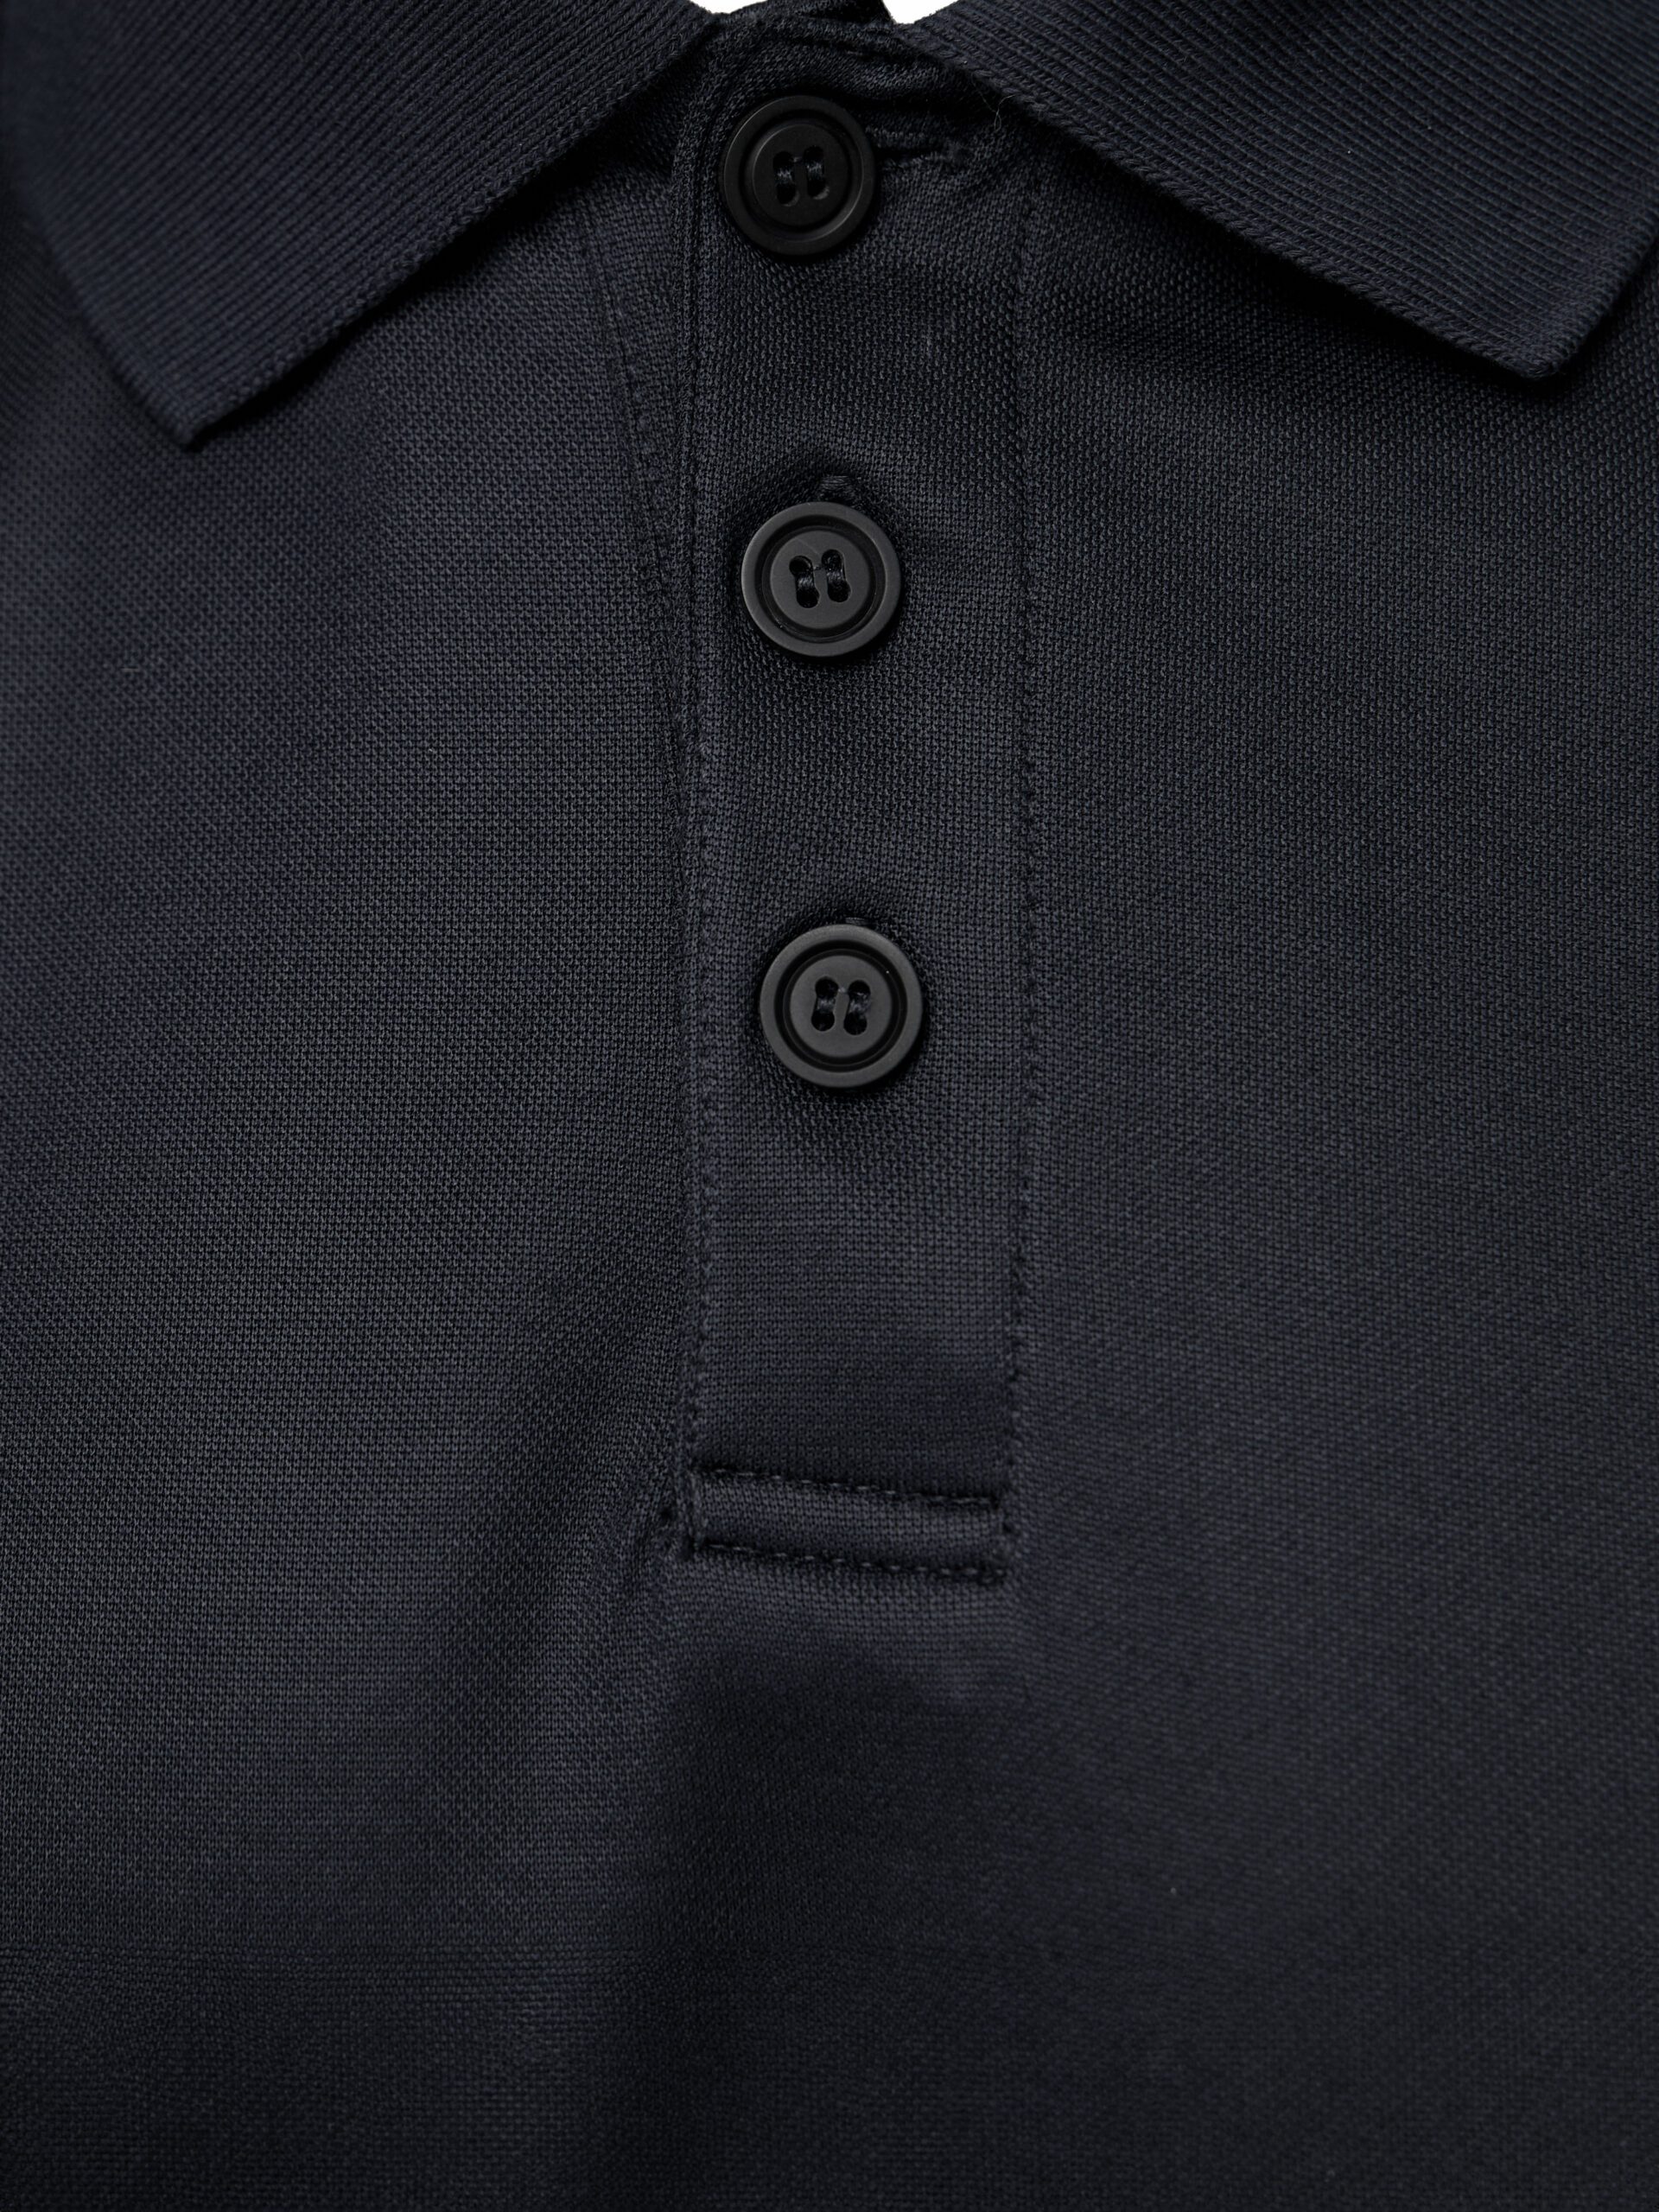 PUMA | Essentials PUMA Workwear Shirt Workwear Men\'s Polo